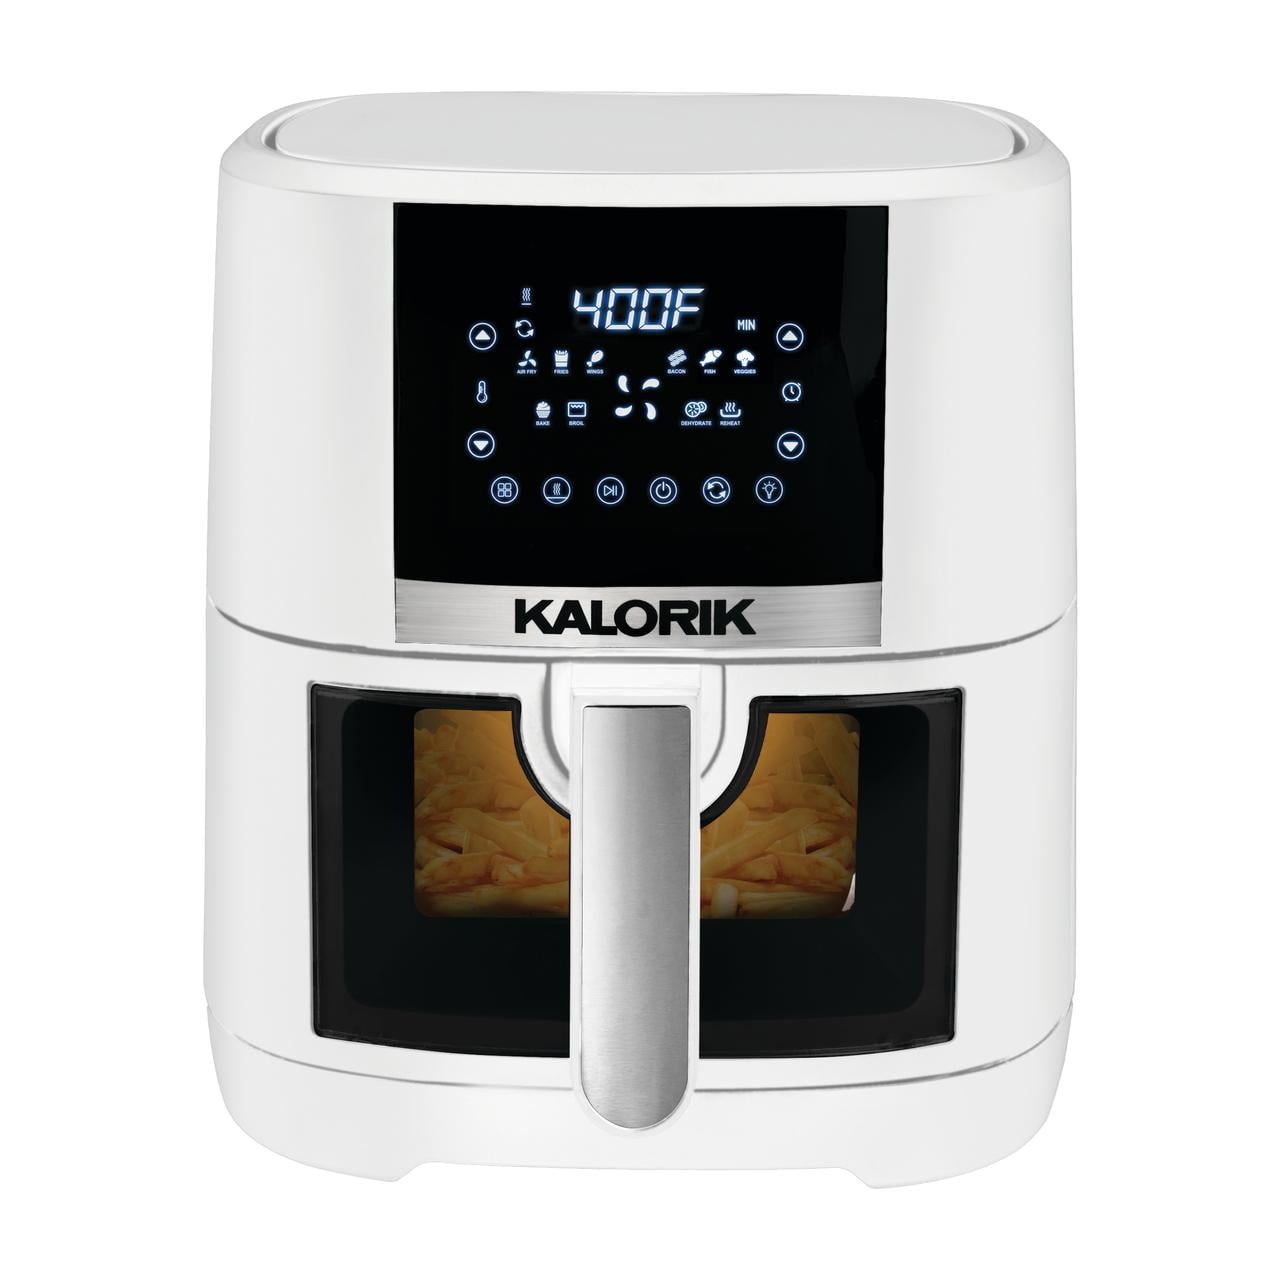 Kalorik 5 Quart 13.5 ” Air Fryer with Ceramic Coating and Window